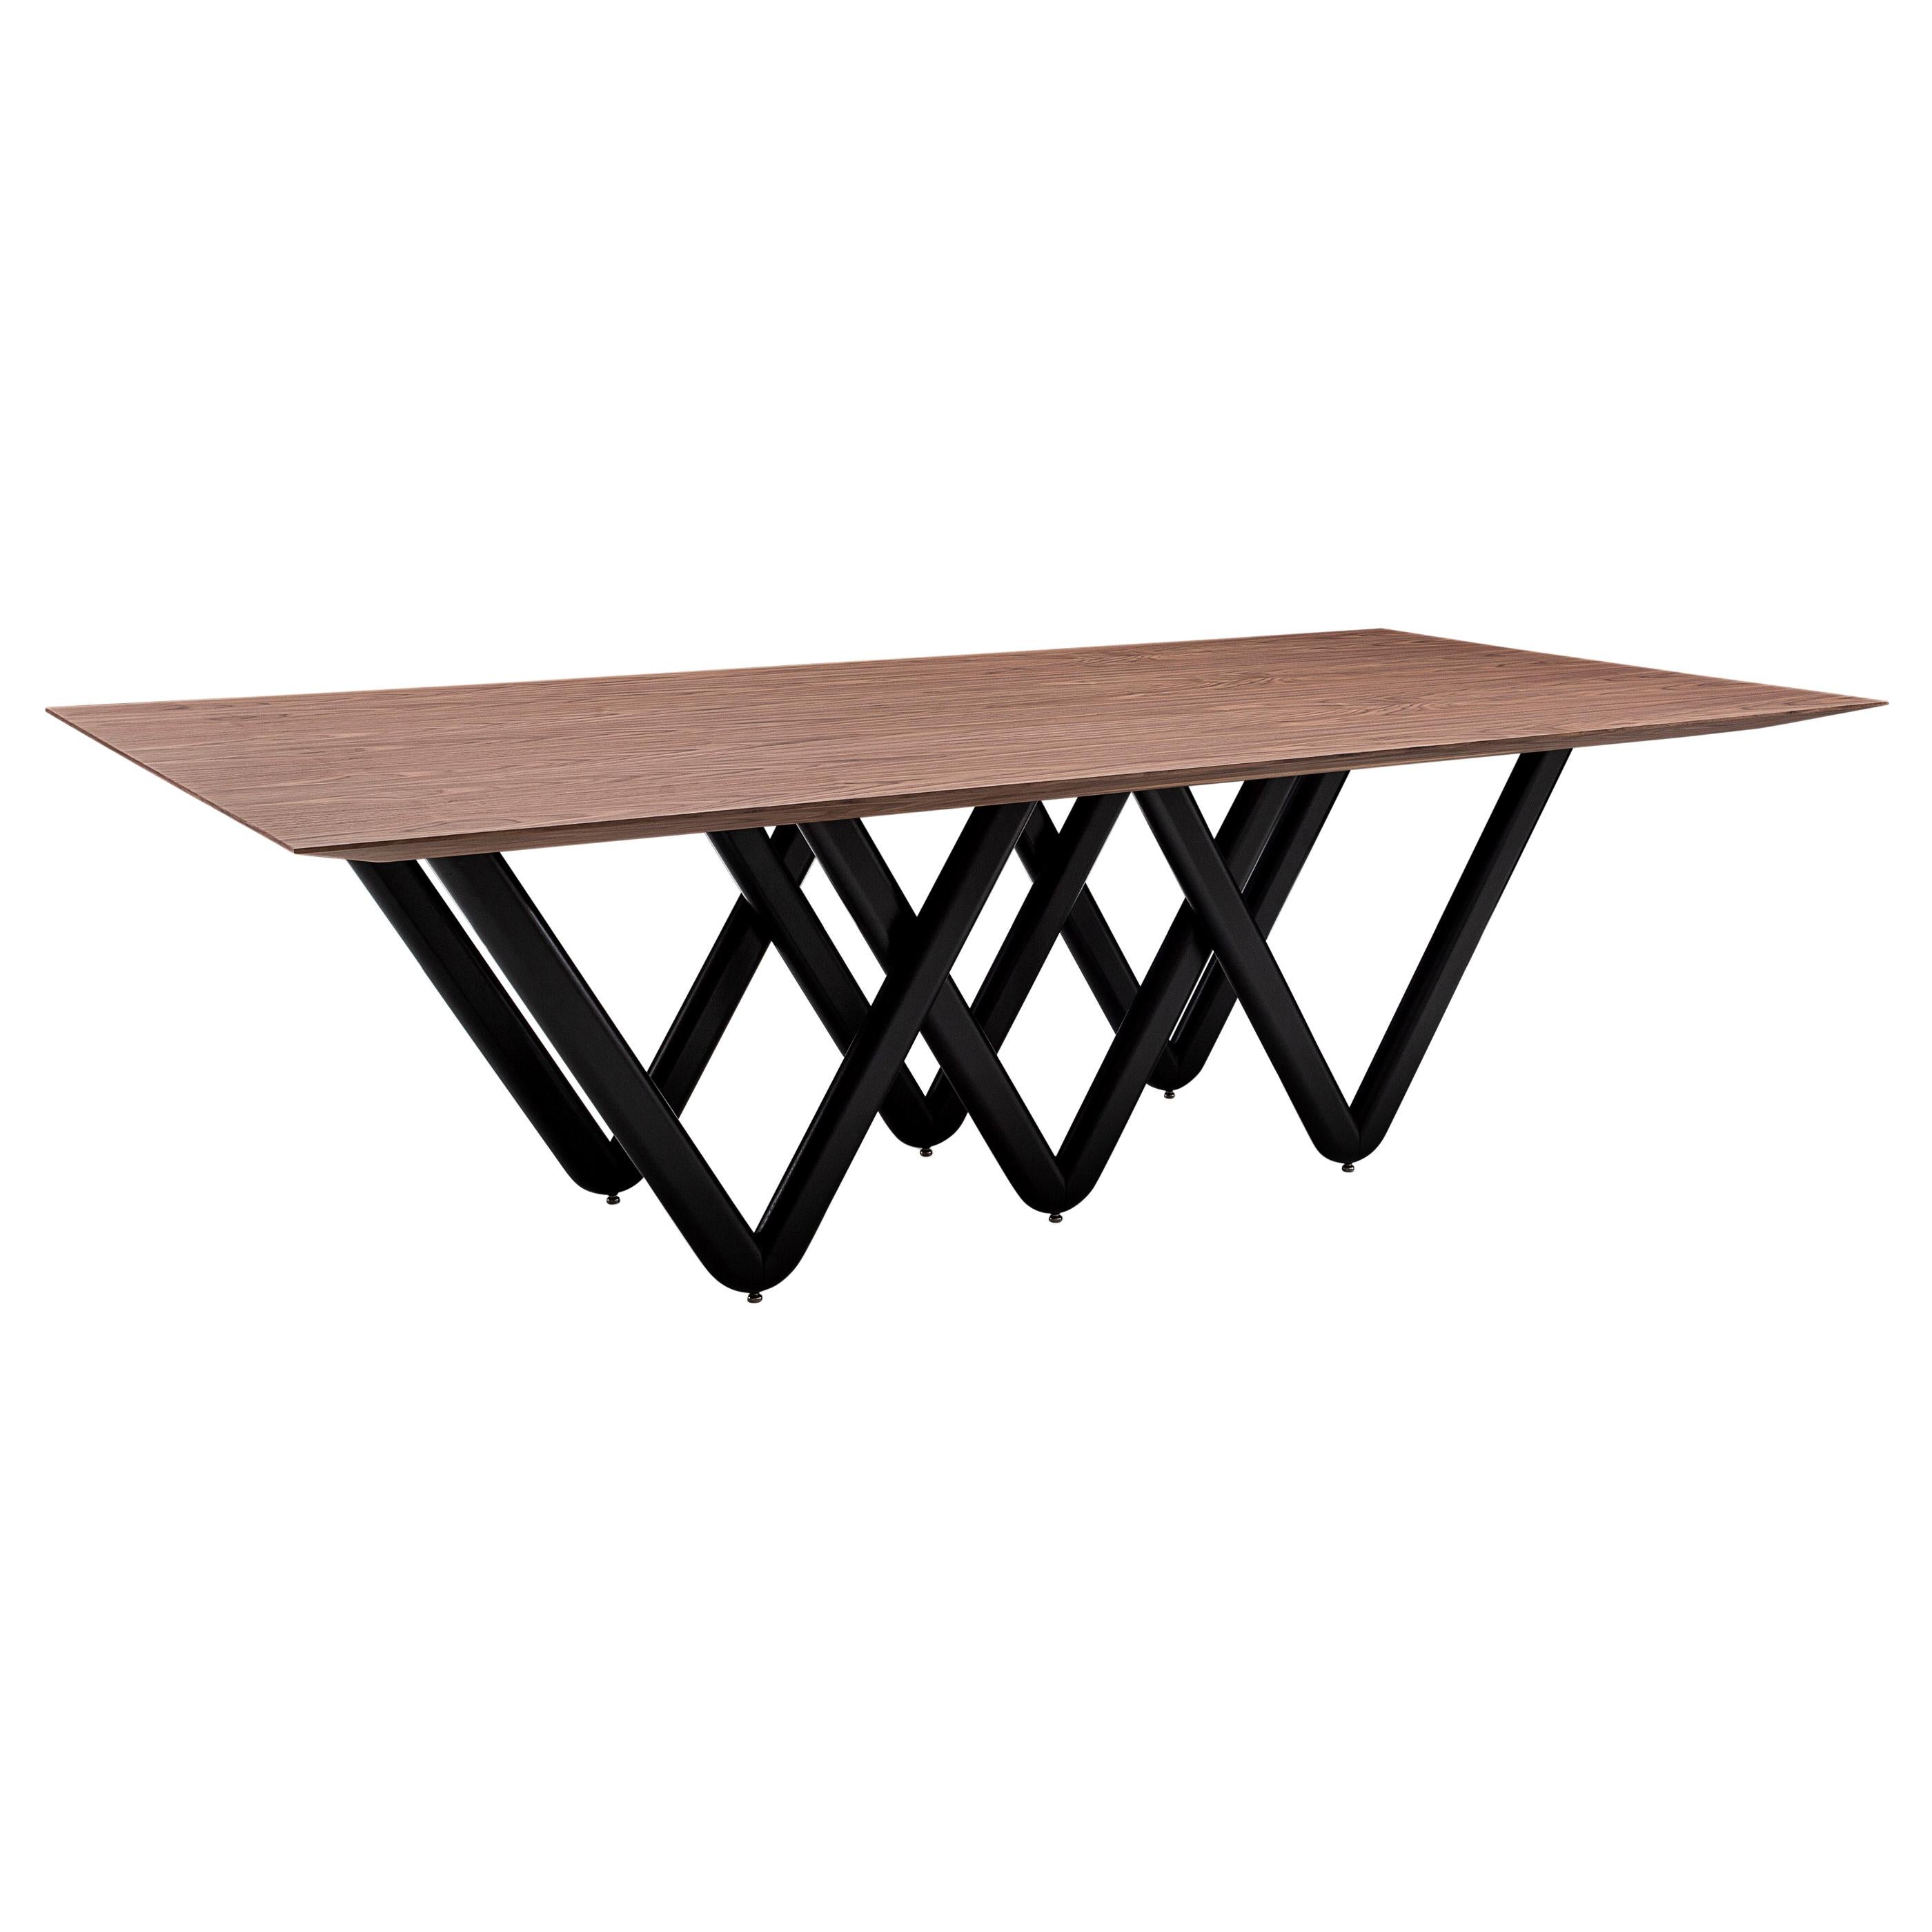 Der Esstisch Dablio zeichnet sich durch ein schwarz lackiertes, sich kreuzendes V-förmiges Untergestell aus, das von einer beeindruckenden Tischplatte aus furniertem Nussbaumholz unterstrichen wird. Er hat eine sehr einzigartige und originelle